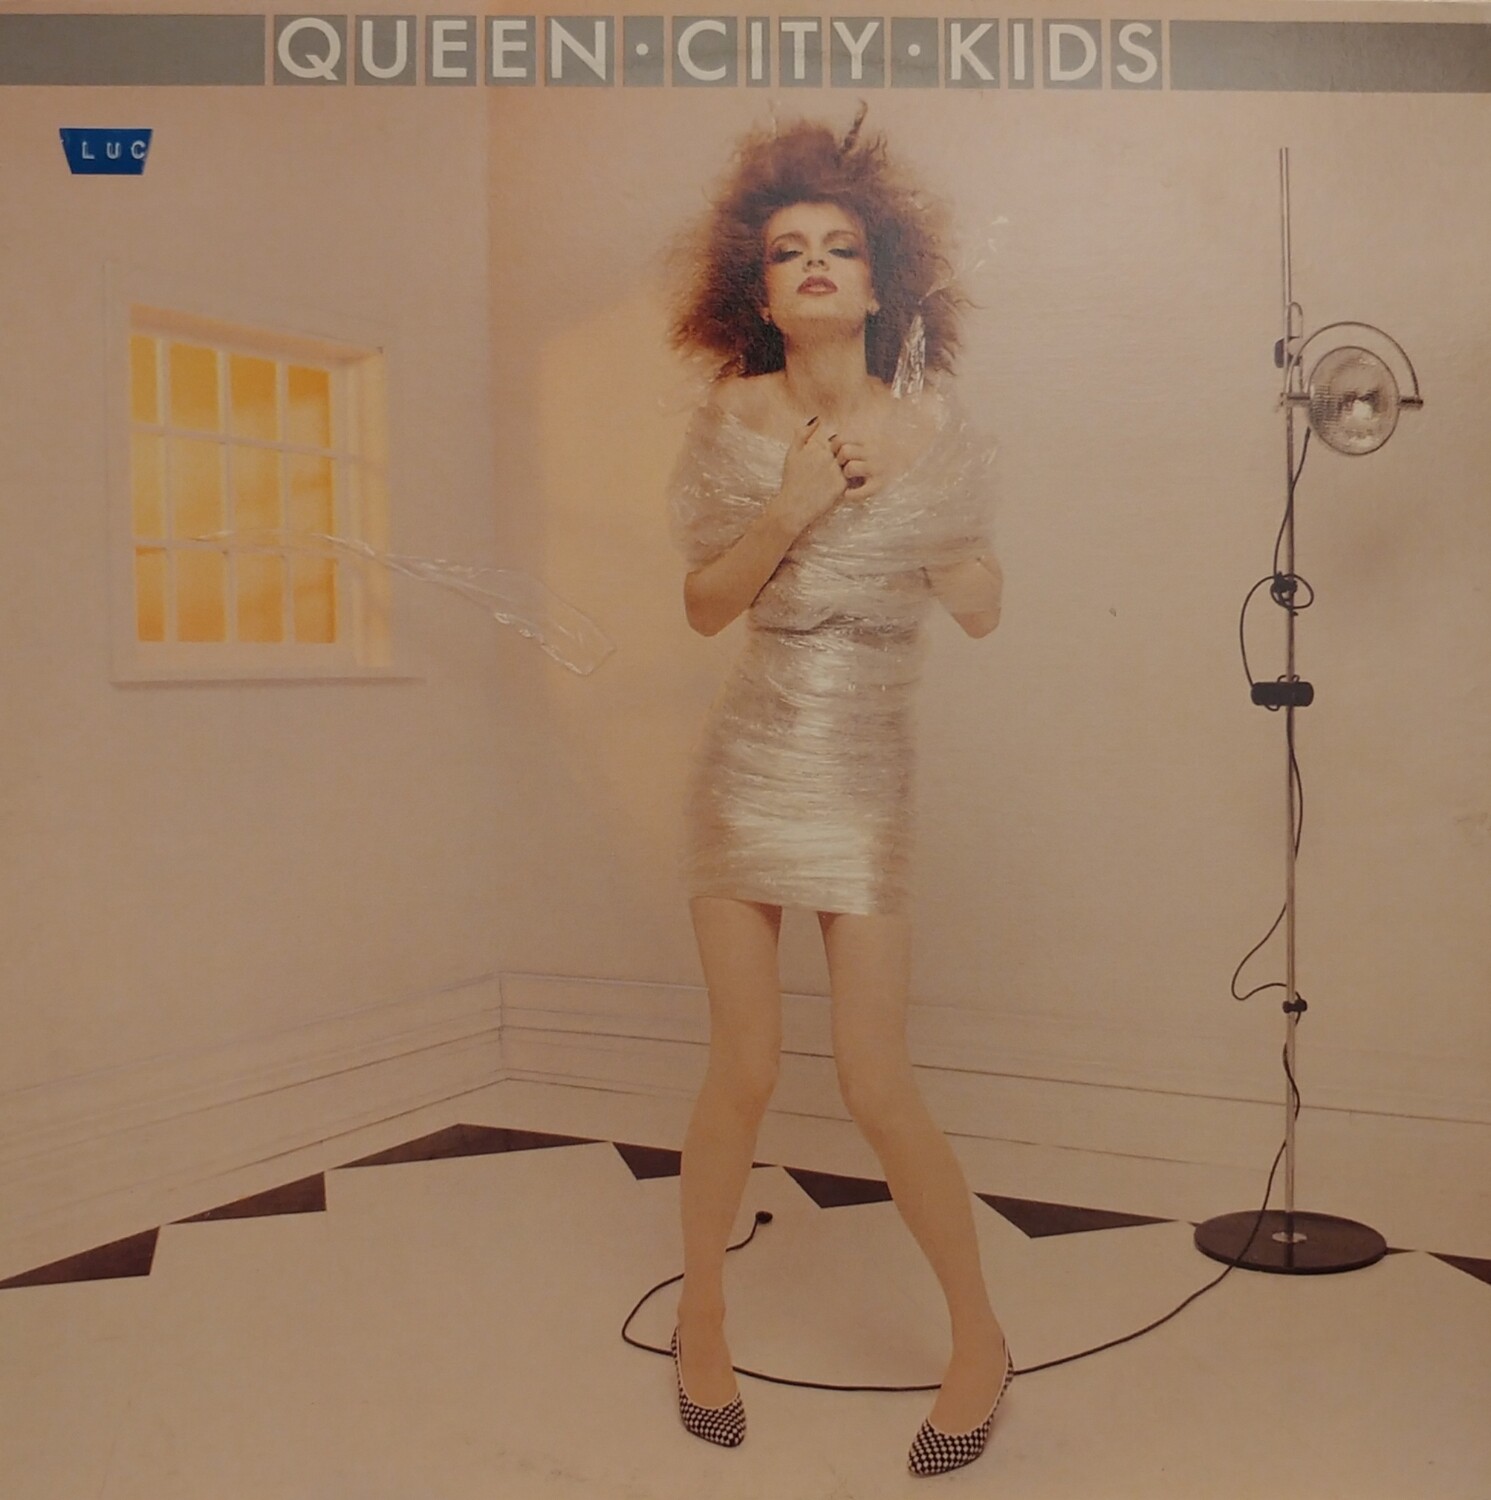 Queen City Kids - Queen City Kids